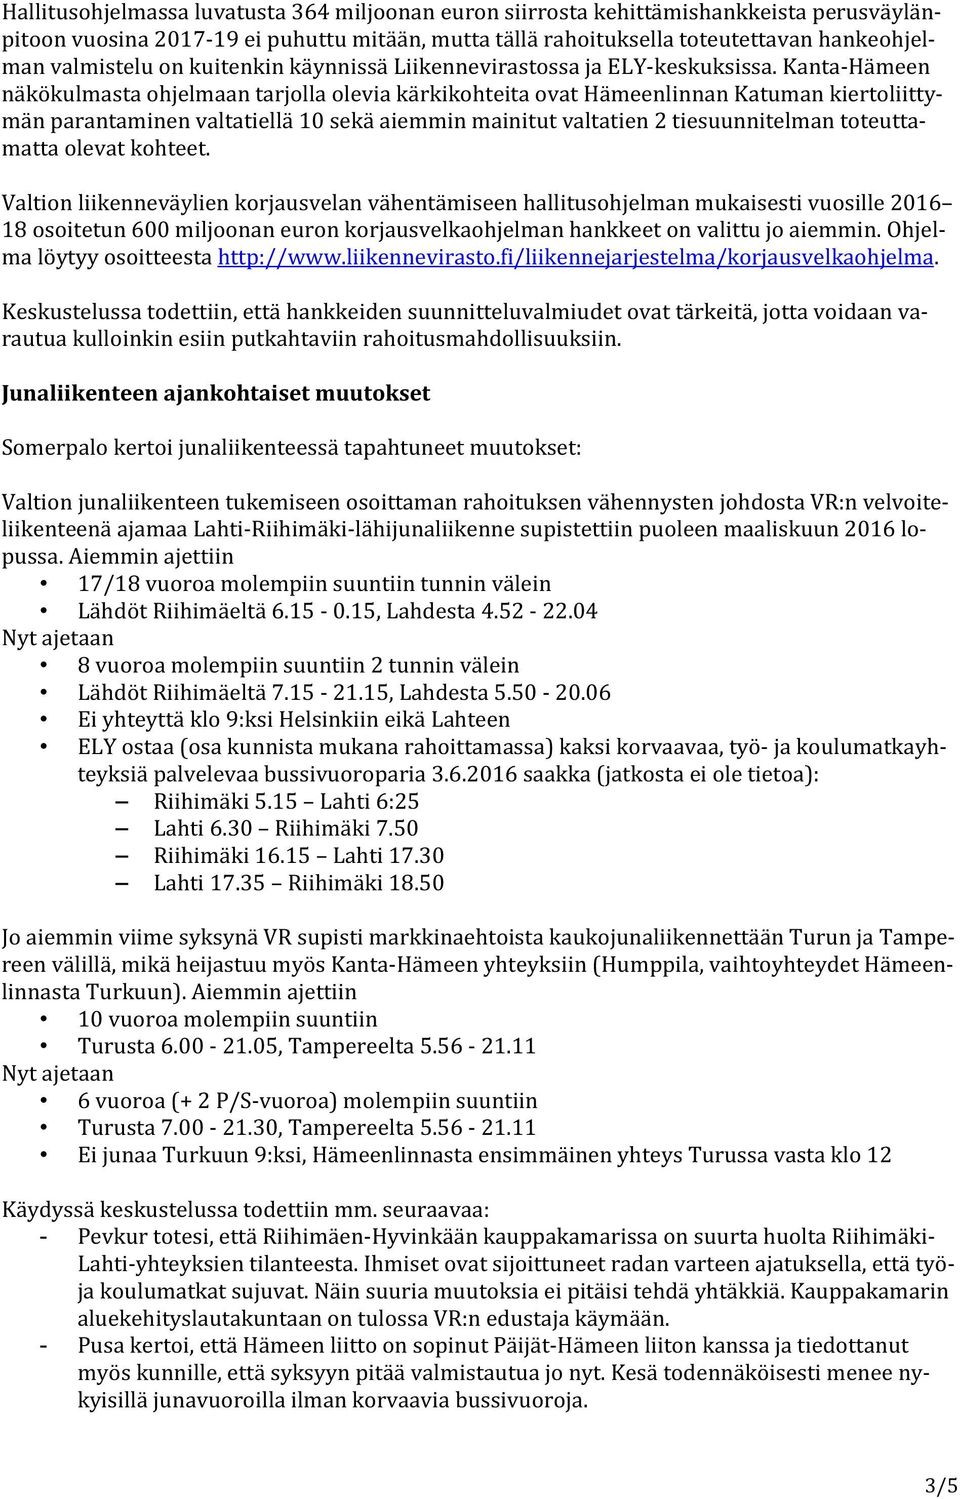 Kanta-Hämeen näkökulmasta ohjelmaan tarjolla olevia kärkikohteita ovat Hämeenlinnan Katuman kiertoliittymän parantaminen valtatiellä 10 sekä aiemmin mainitut valtatien 2 tiesuunnitelman toteuttamatta